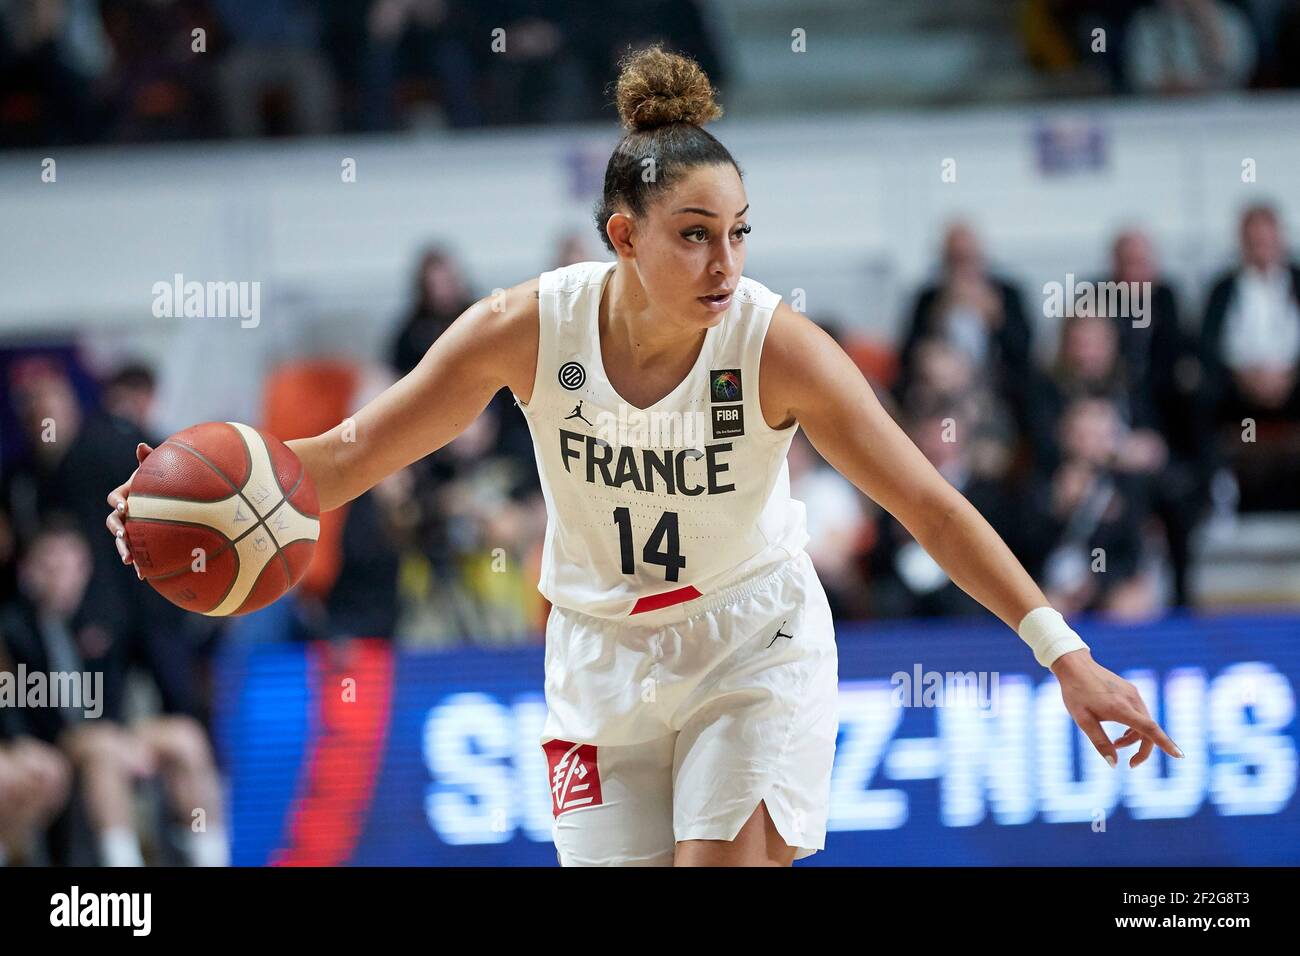 Bria HARTLEY (14) aus Frankreich während des FIBA Women's Olympic Qualifying Tournament 2020, Basketballspiel zwischen Frankreich und Australien am 6. Februar 2020 im Palais des Sports du Prado in Bourges, Frankreich - Foto Ann-Dee Lamour / CDP MEDIA / DPPI Stockfoto